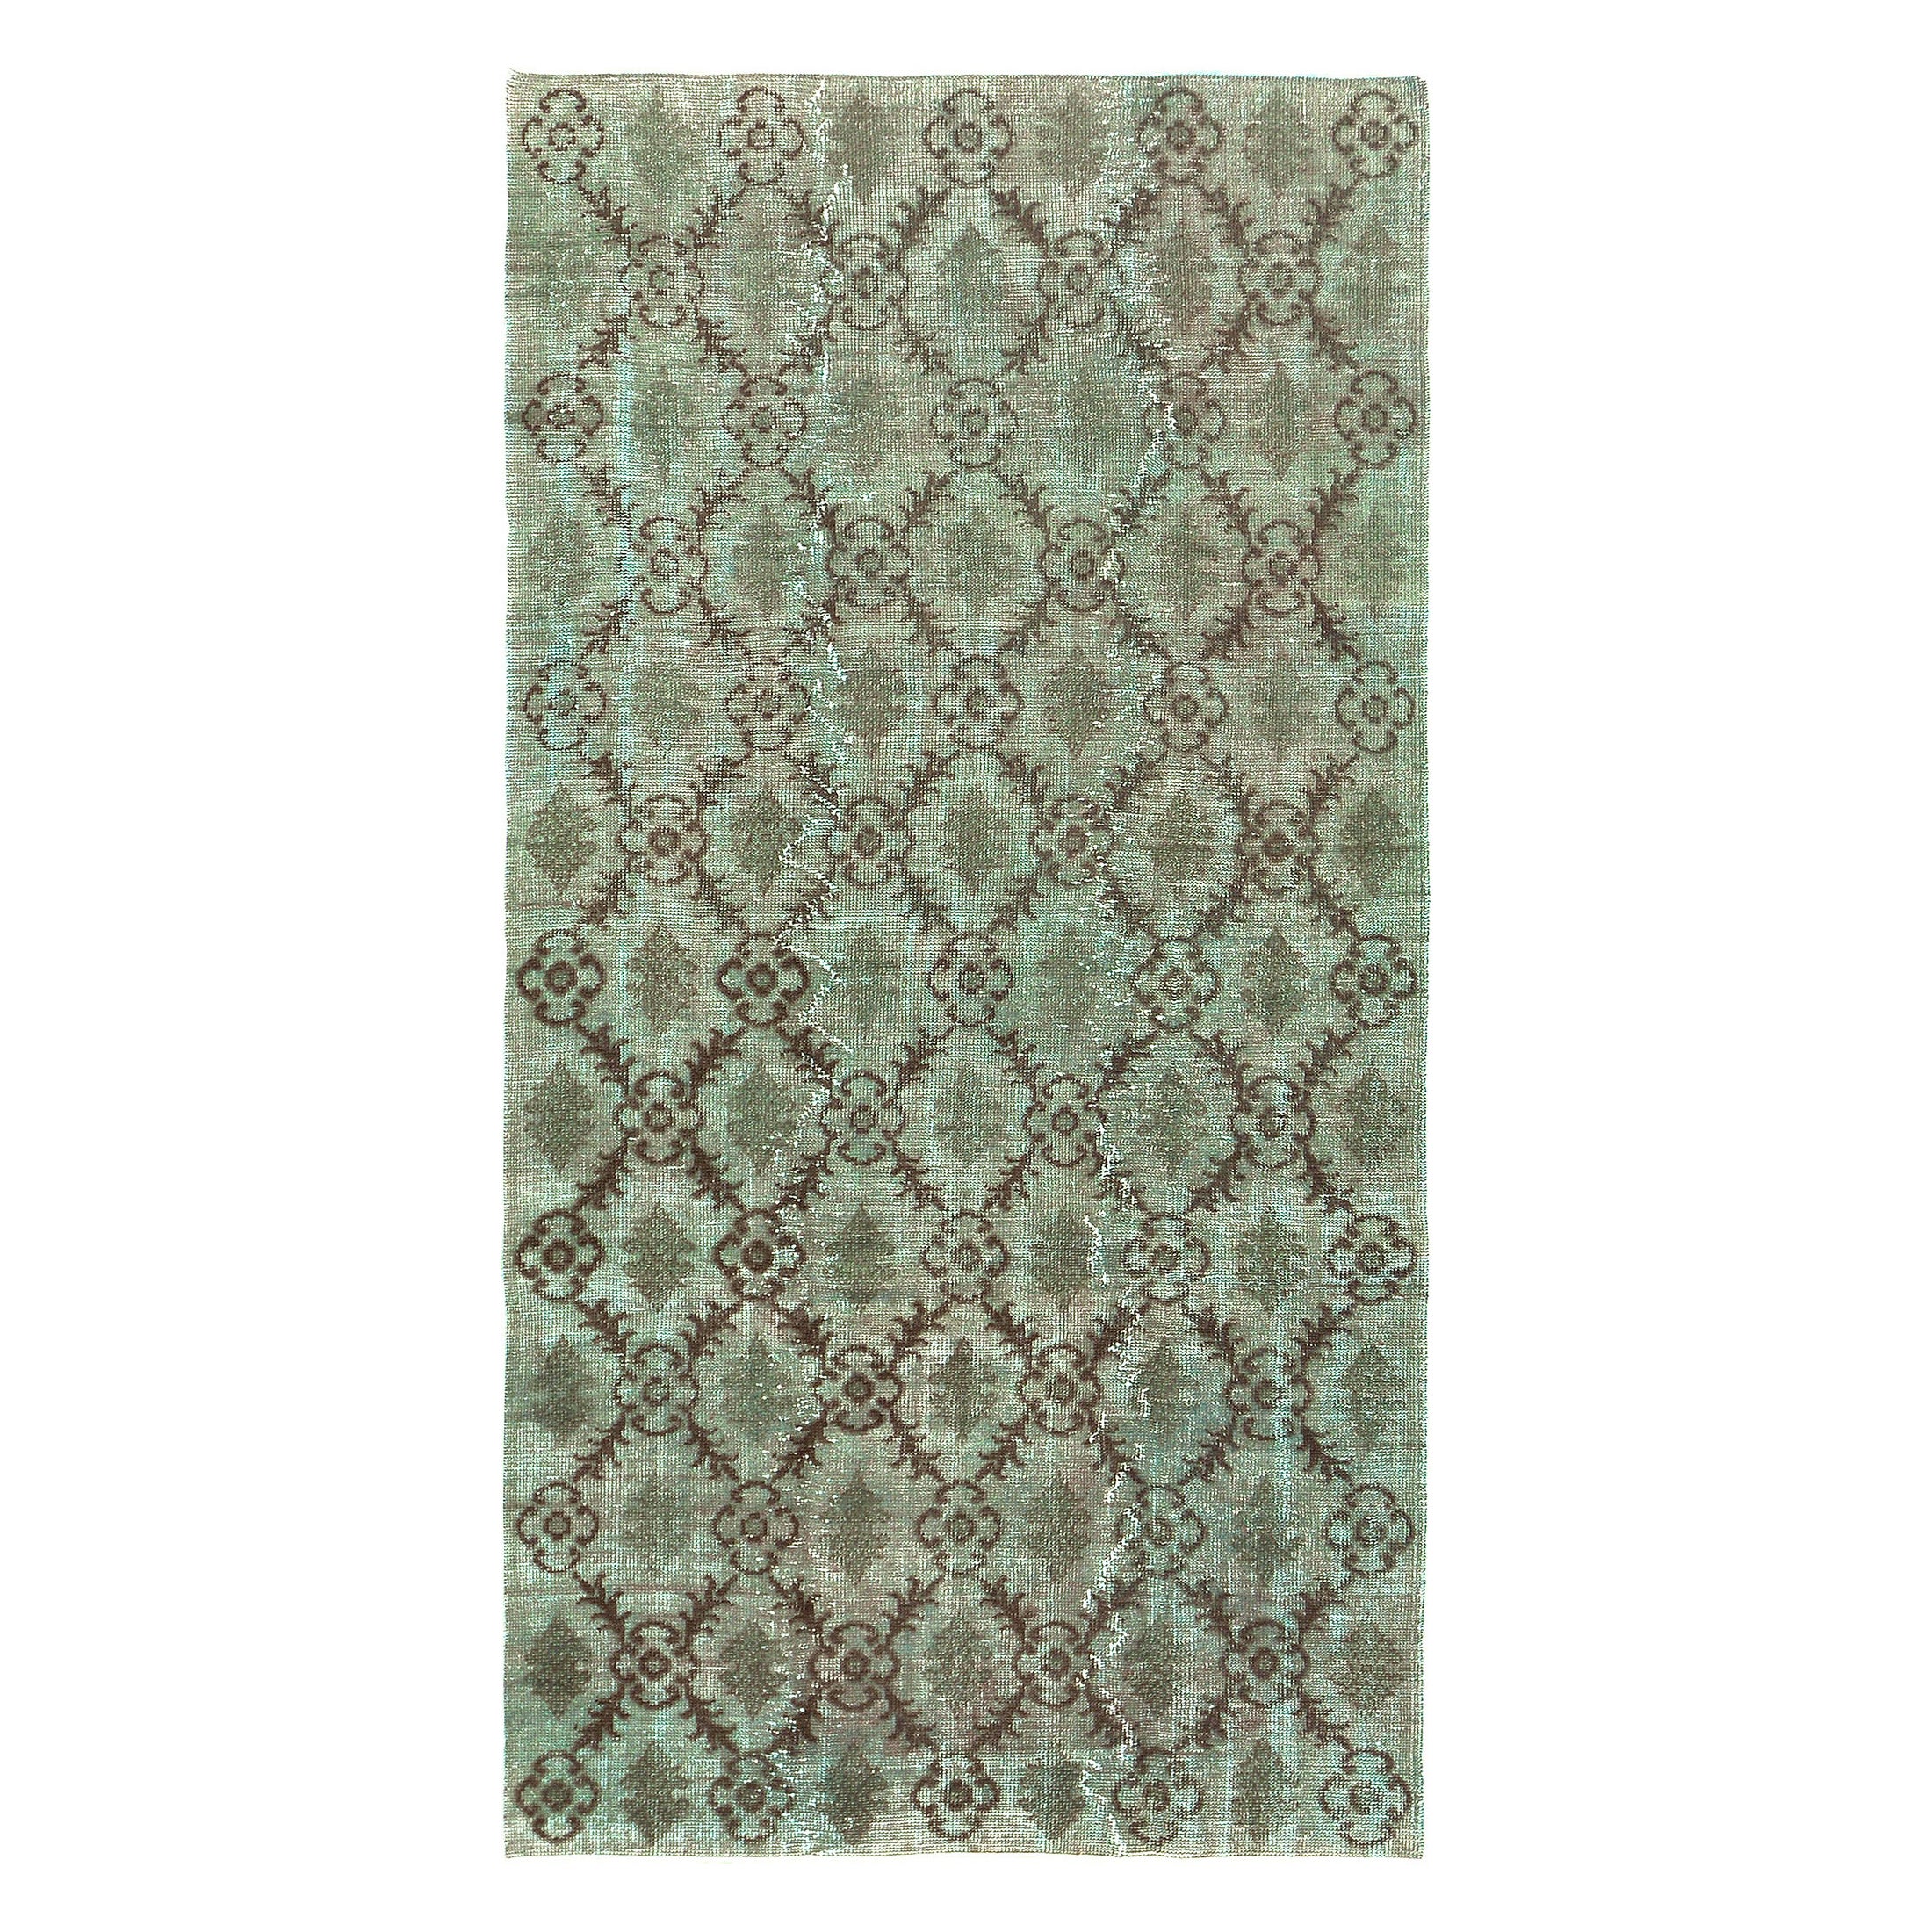 Überfärbter türkisch-anatolischer Vintage-Teppich